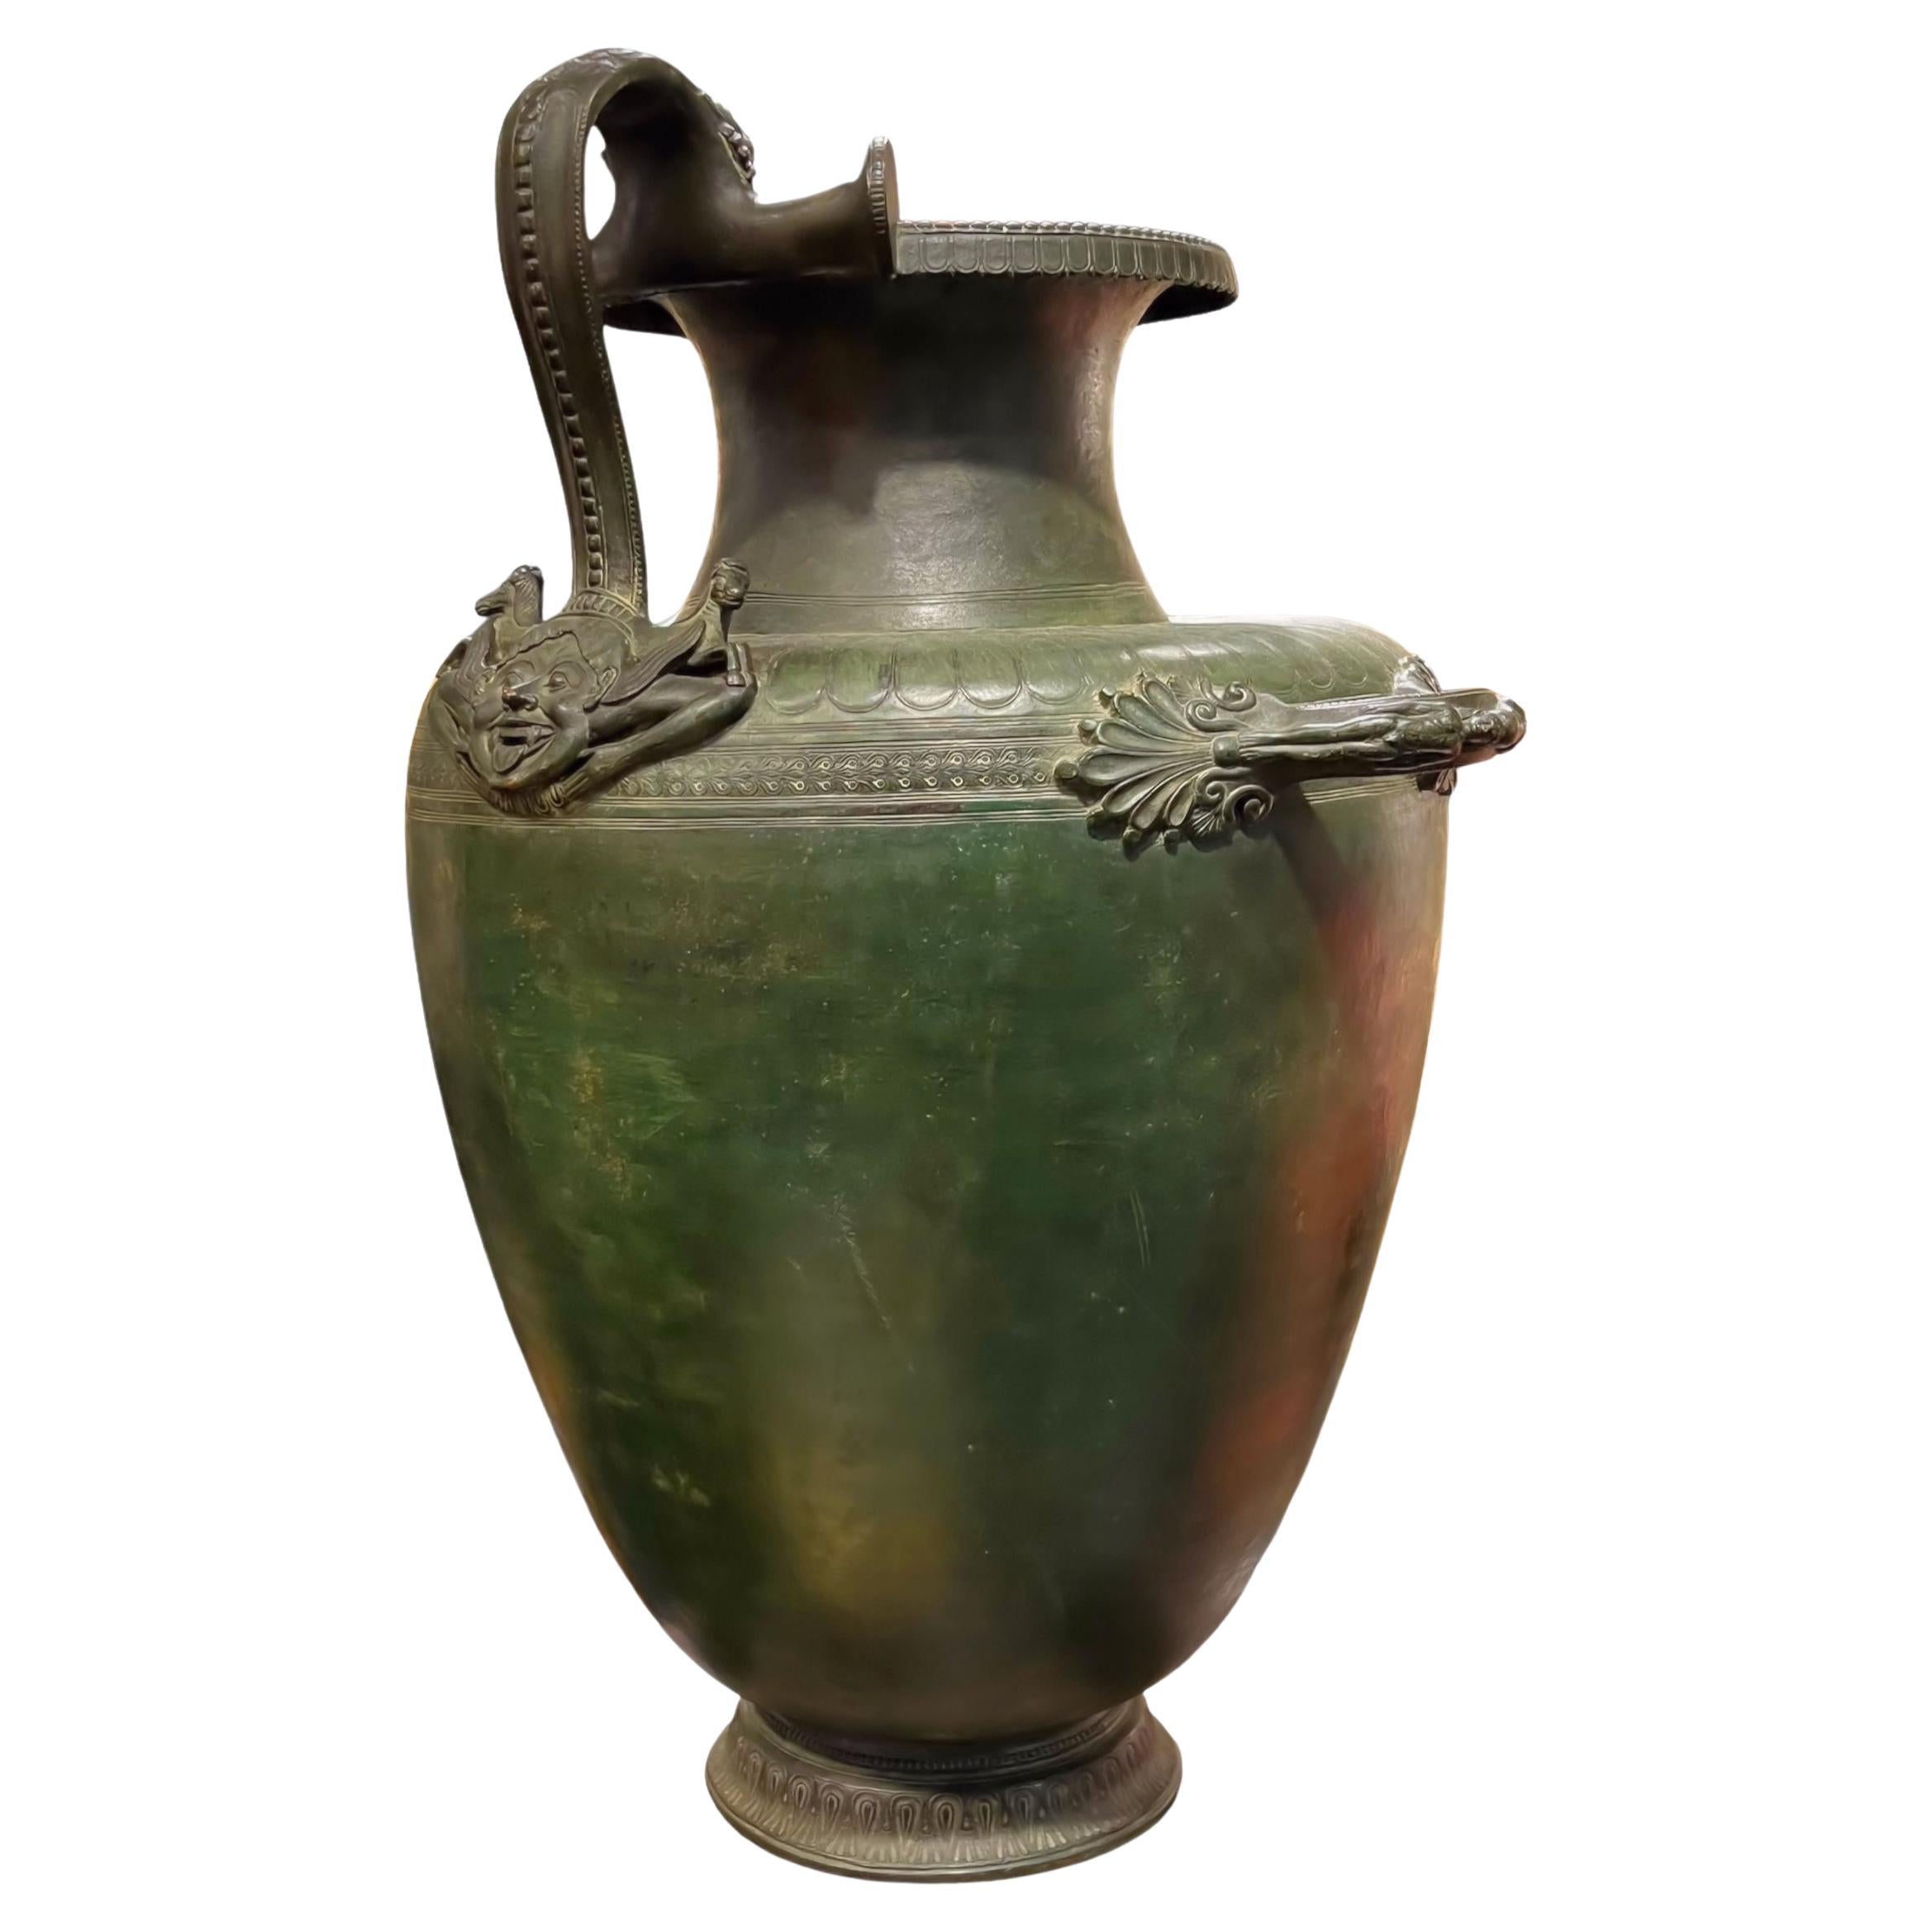 Notre antique jarre à eau hydrique en bronze du Grand Tour, d'après le modèle grec original, vers le Ve siècle avant J.-C., présente une patine verte vert-de-gris et est finement moulée avec un masque de rire ailé et des hippocampes au-dessus, ainsi